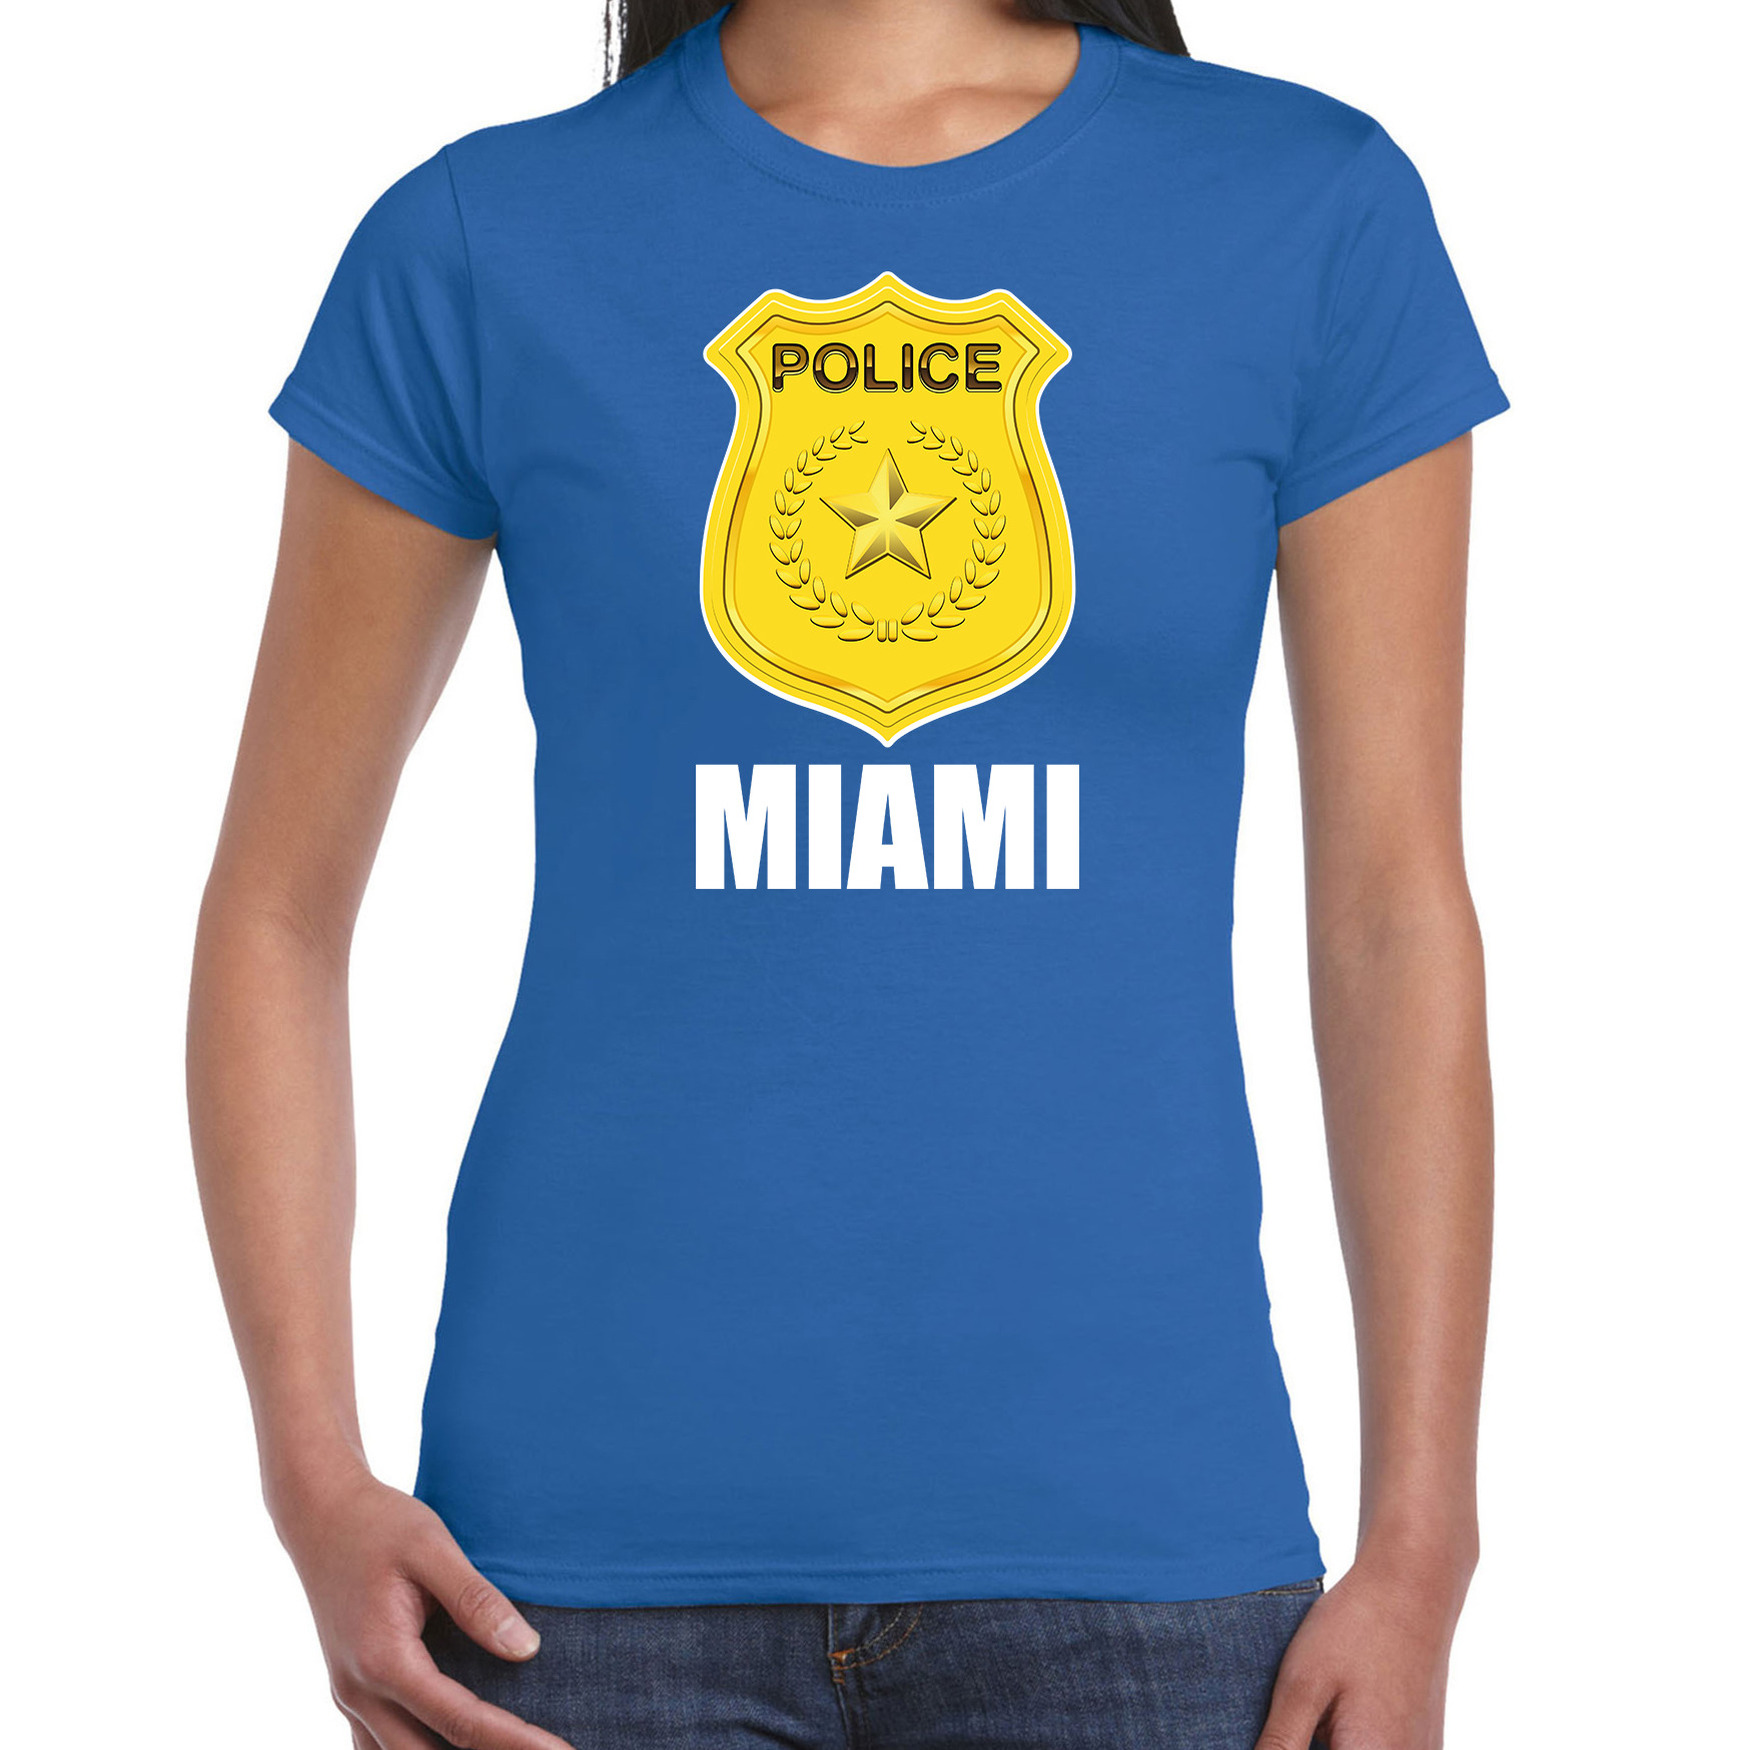 Miami politie-police embleem t-shirt blauw voor dames